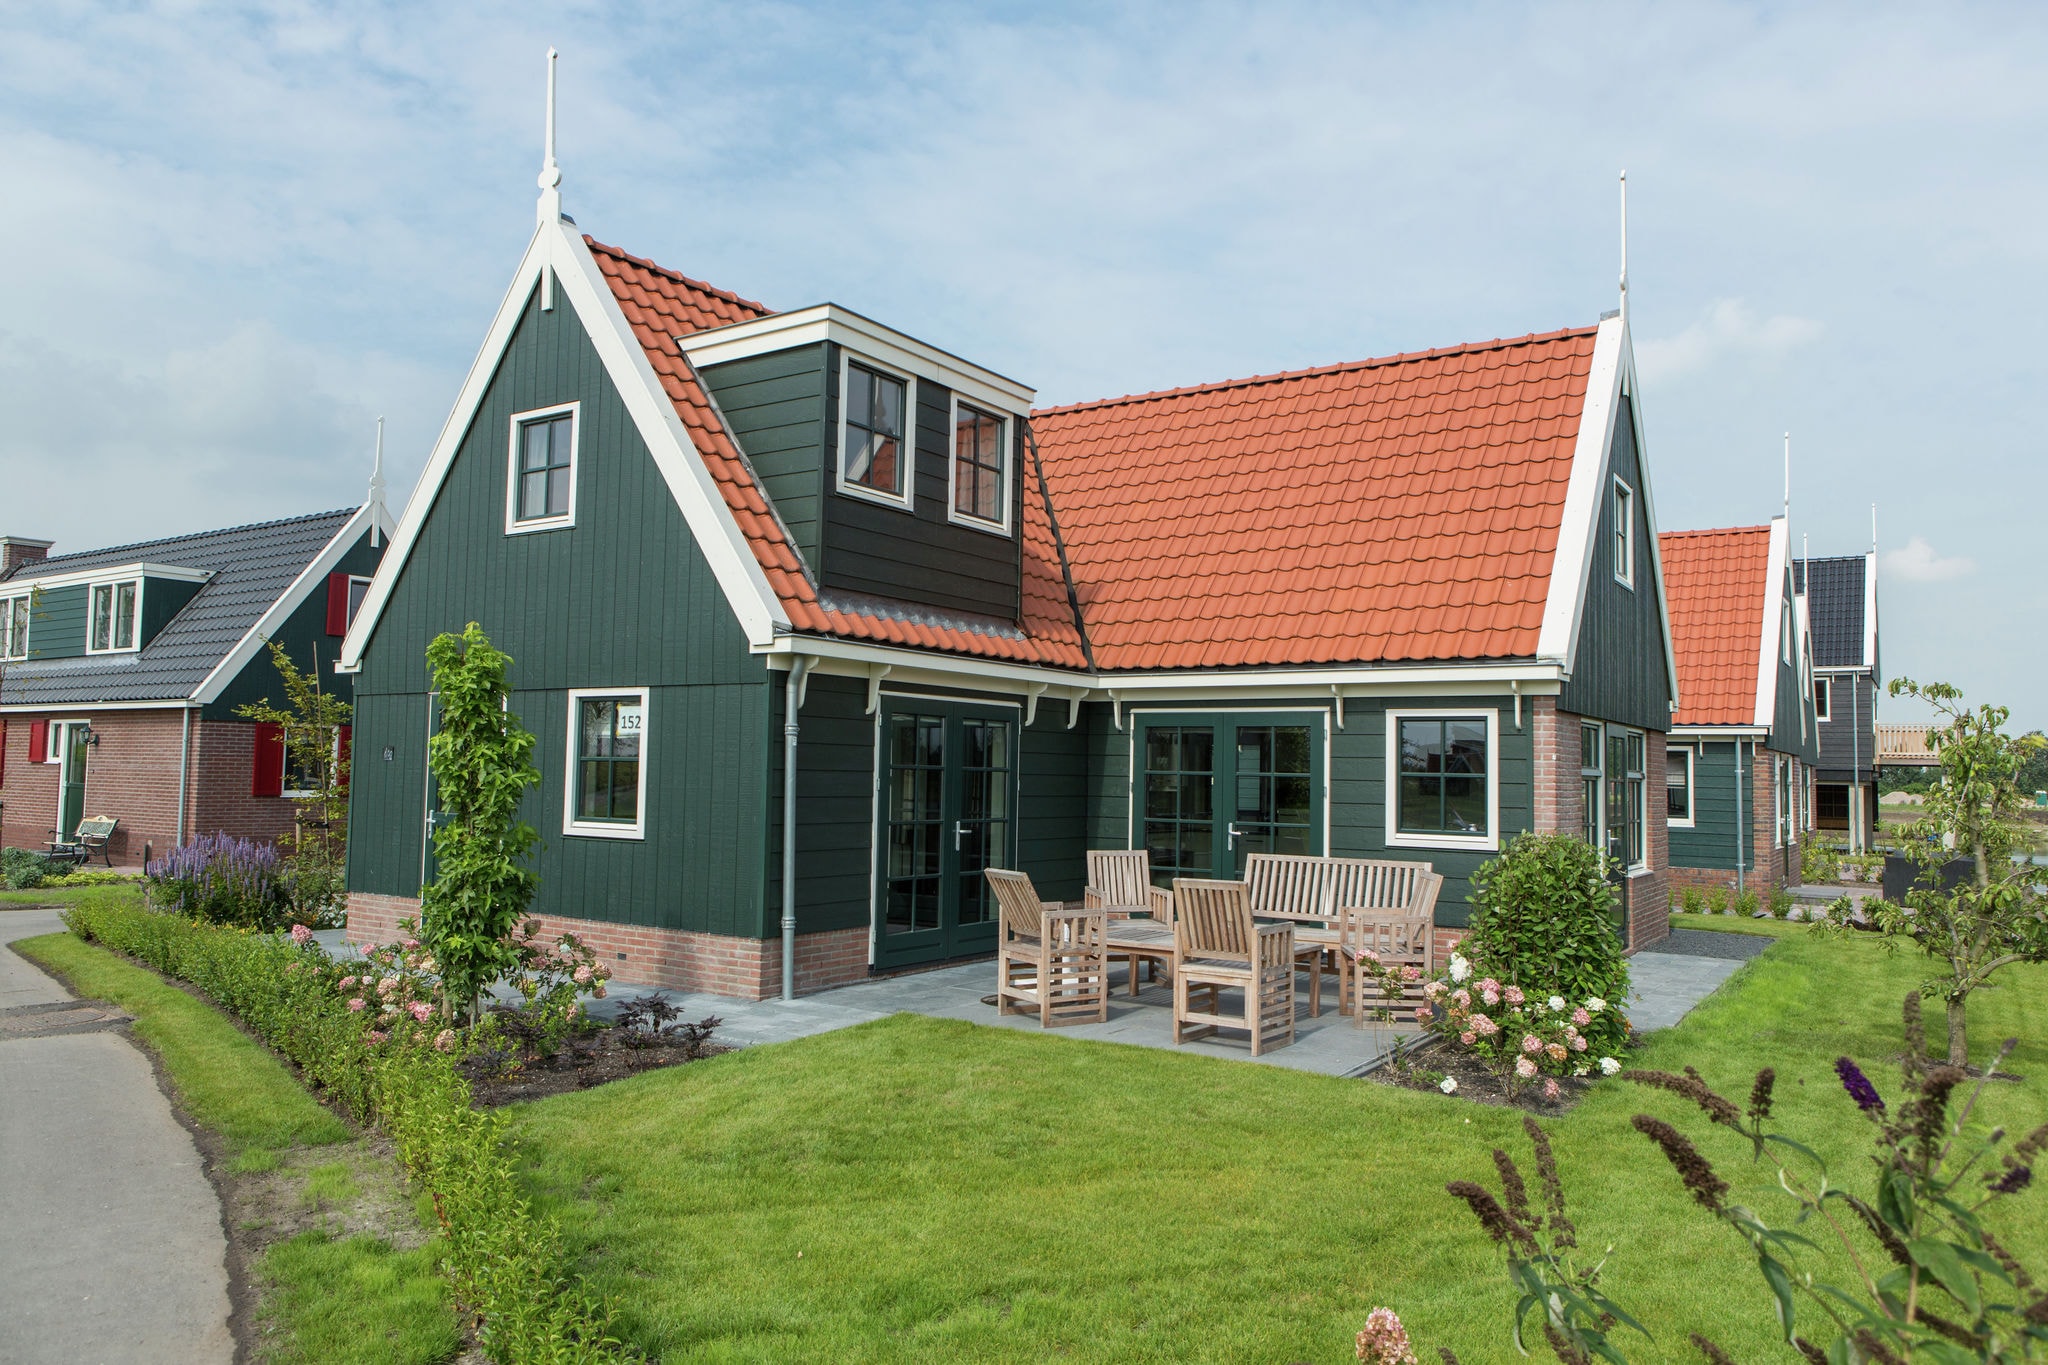 Holiday home in Zaanse style, 15 km from Alkmaar